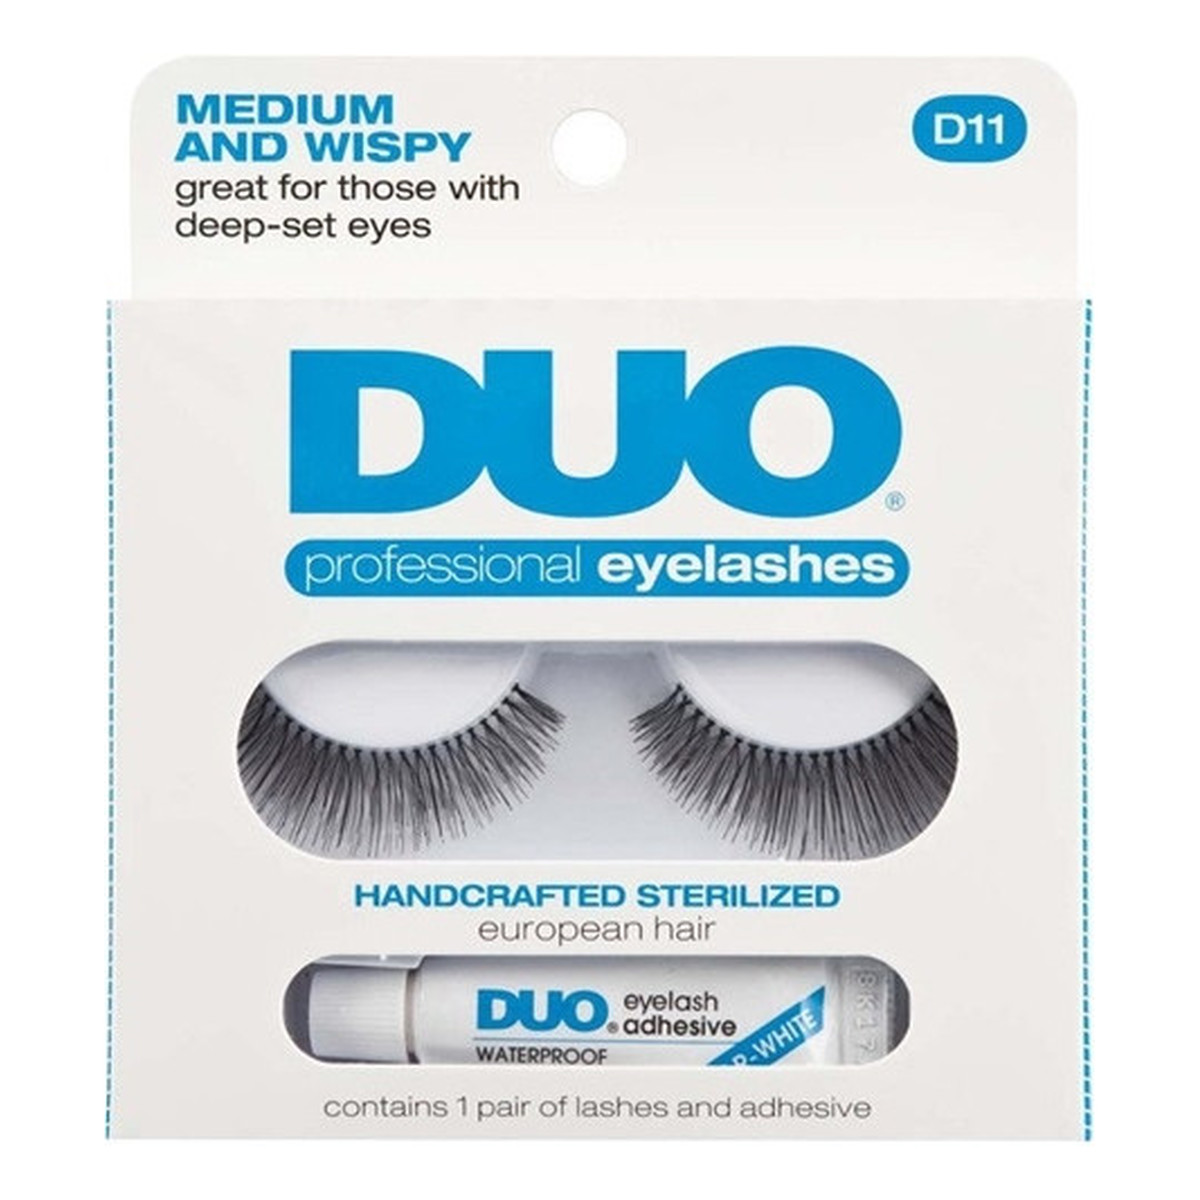 Ardell Duo Professional Eyelashes para sztucznych rzęs D11 + Lash Adhesive klej do rzęs 2,5g